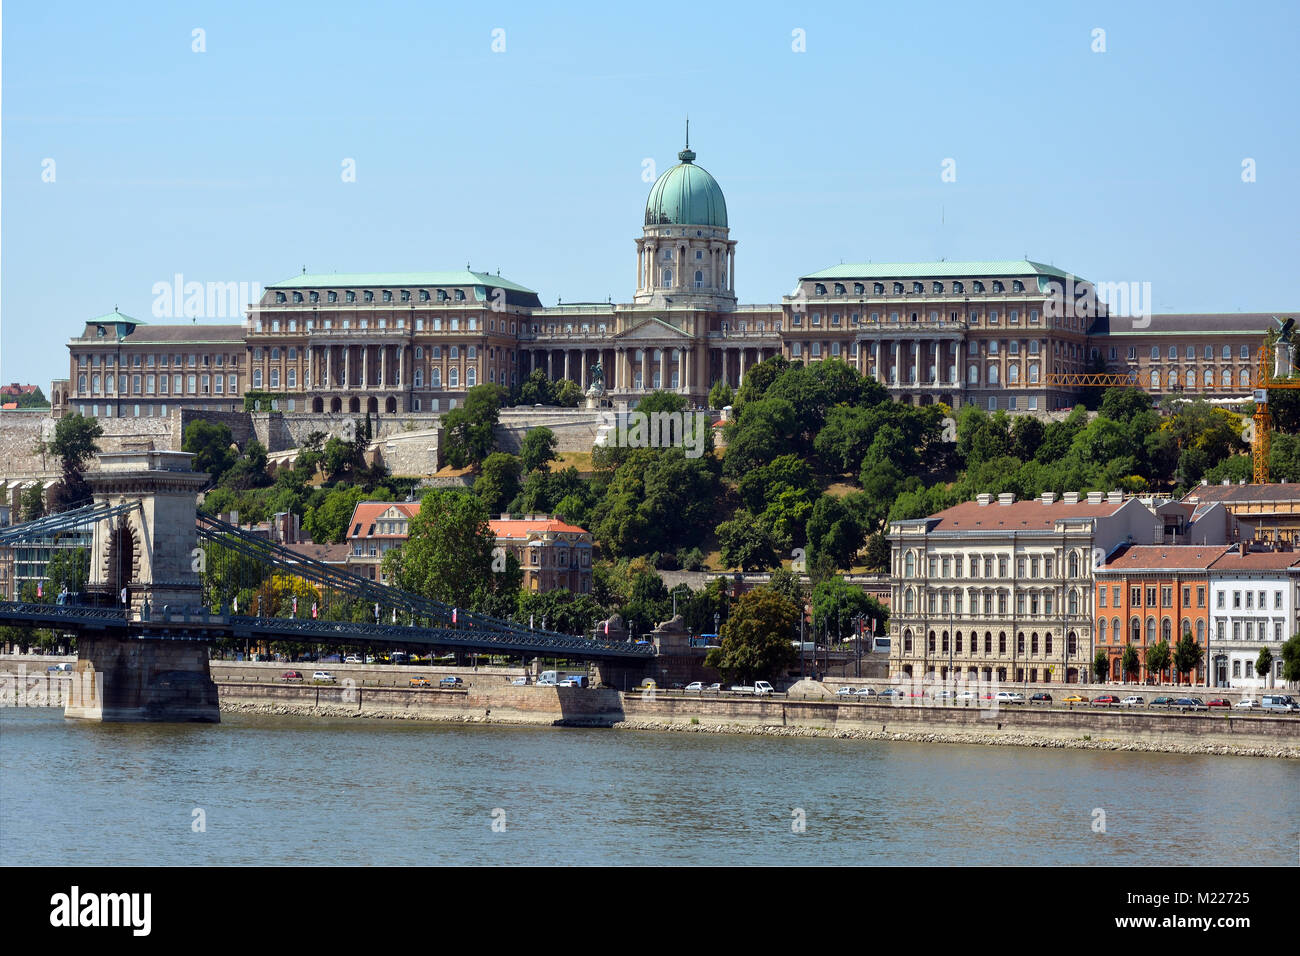 Palais Royal et bâtiments historiques dans la partie Buda de Budapest - Hongrie. Banque D'Images